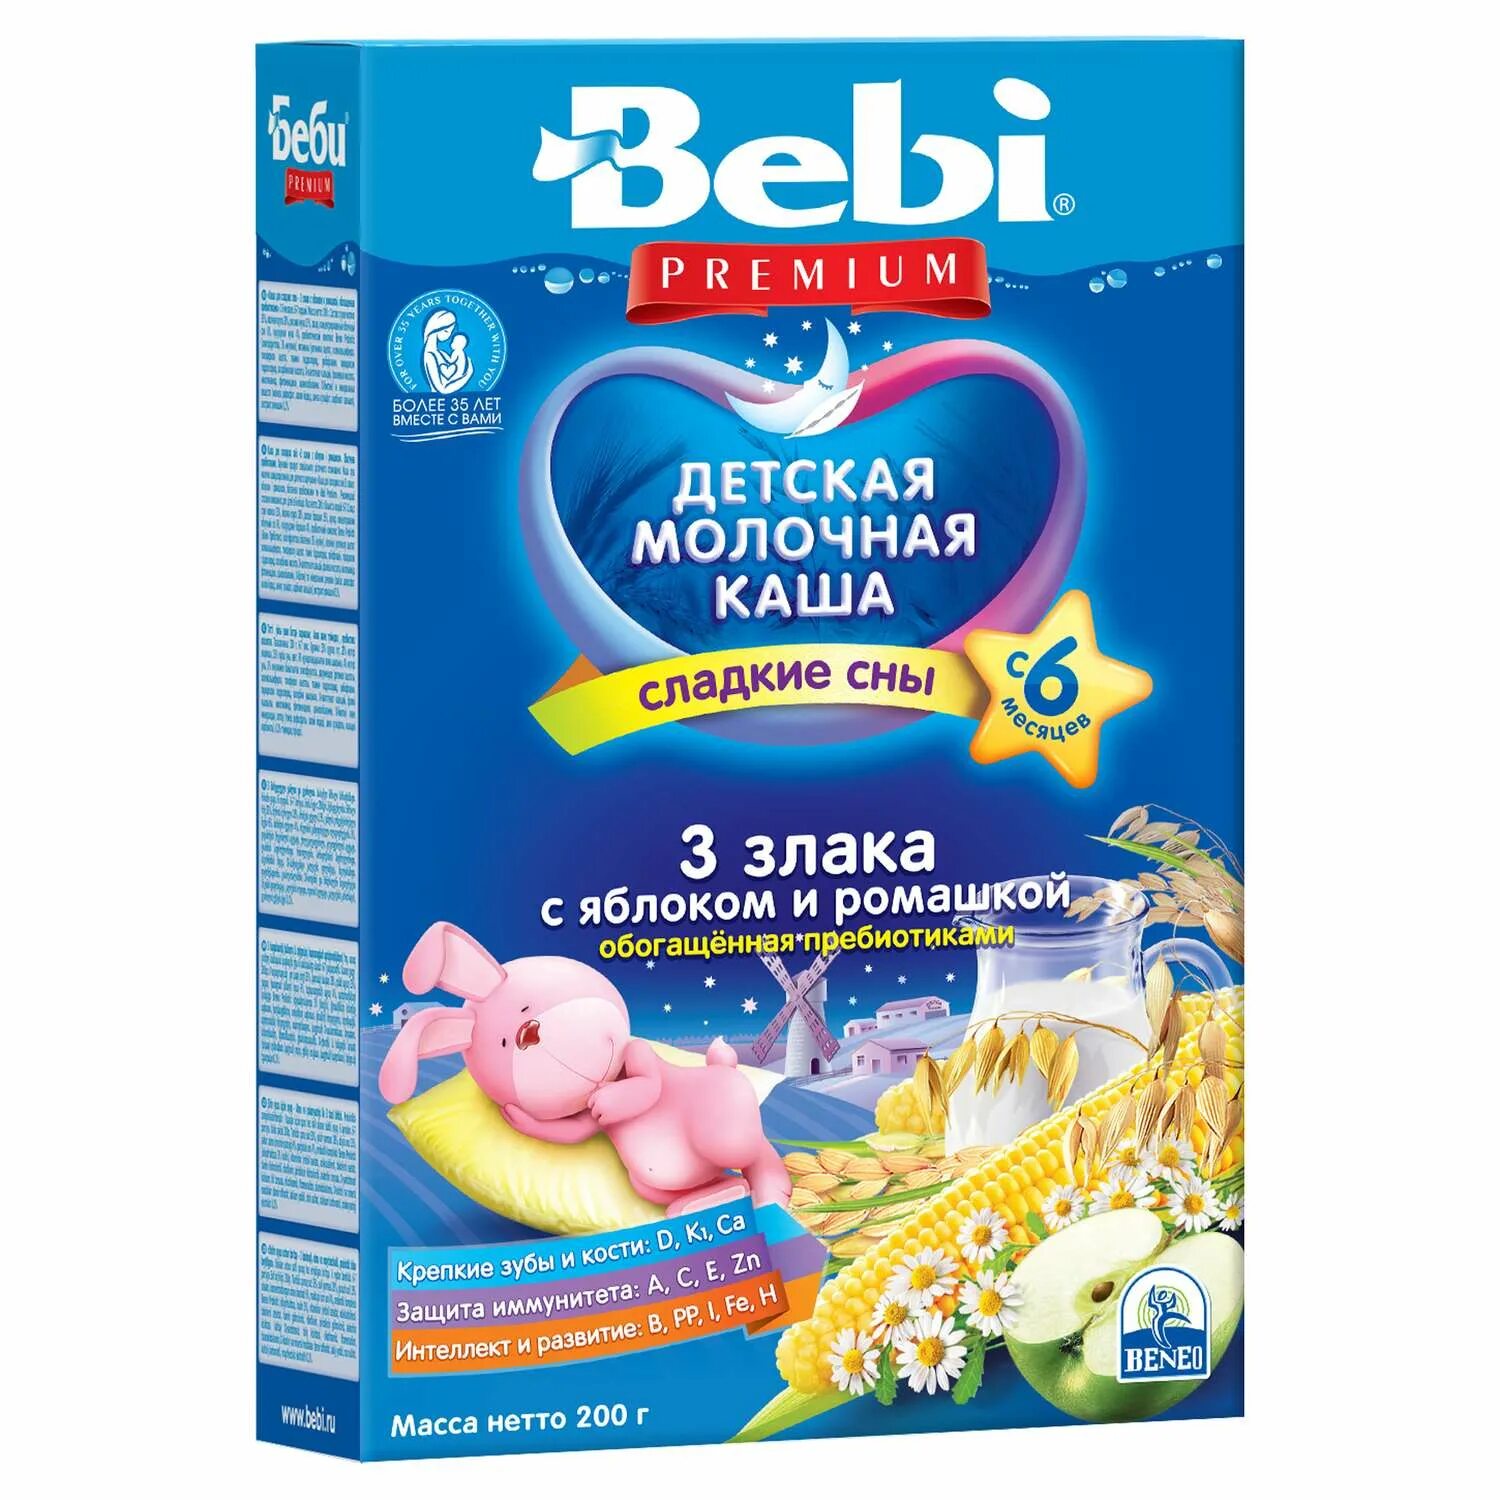 Молочные каши с 6 месяцев. Детские каши Bebi Premium. Bebi Premium детская молочная каша. Беби премиум каша безмолочная. Каша детская молочная Беби премиум.